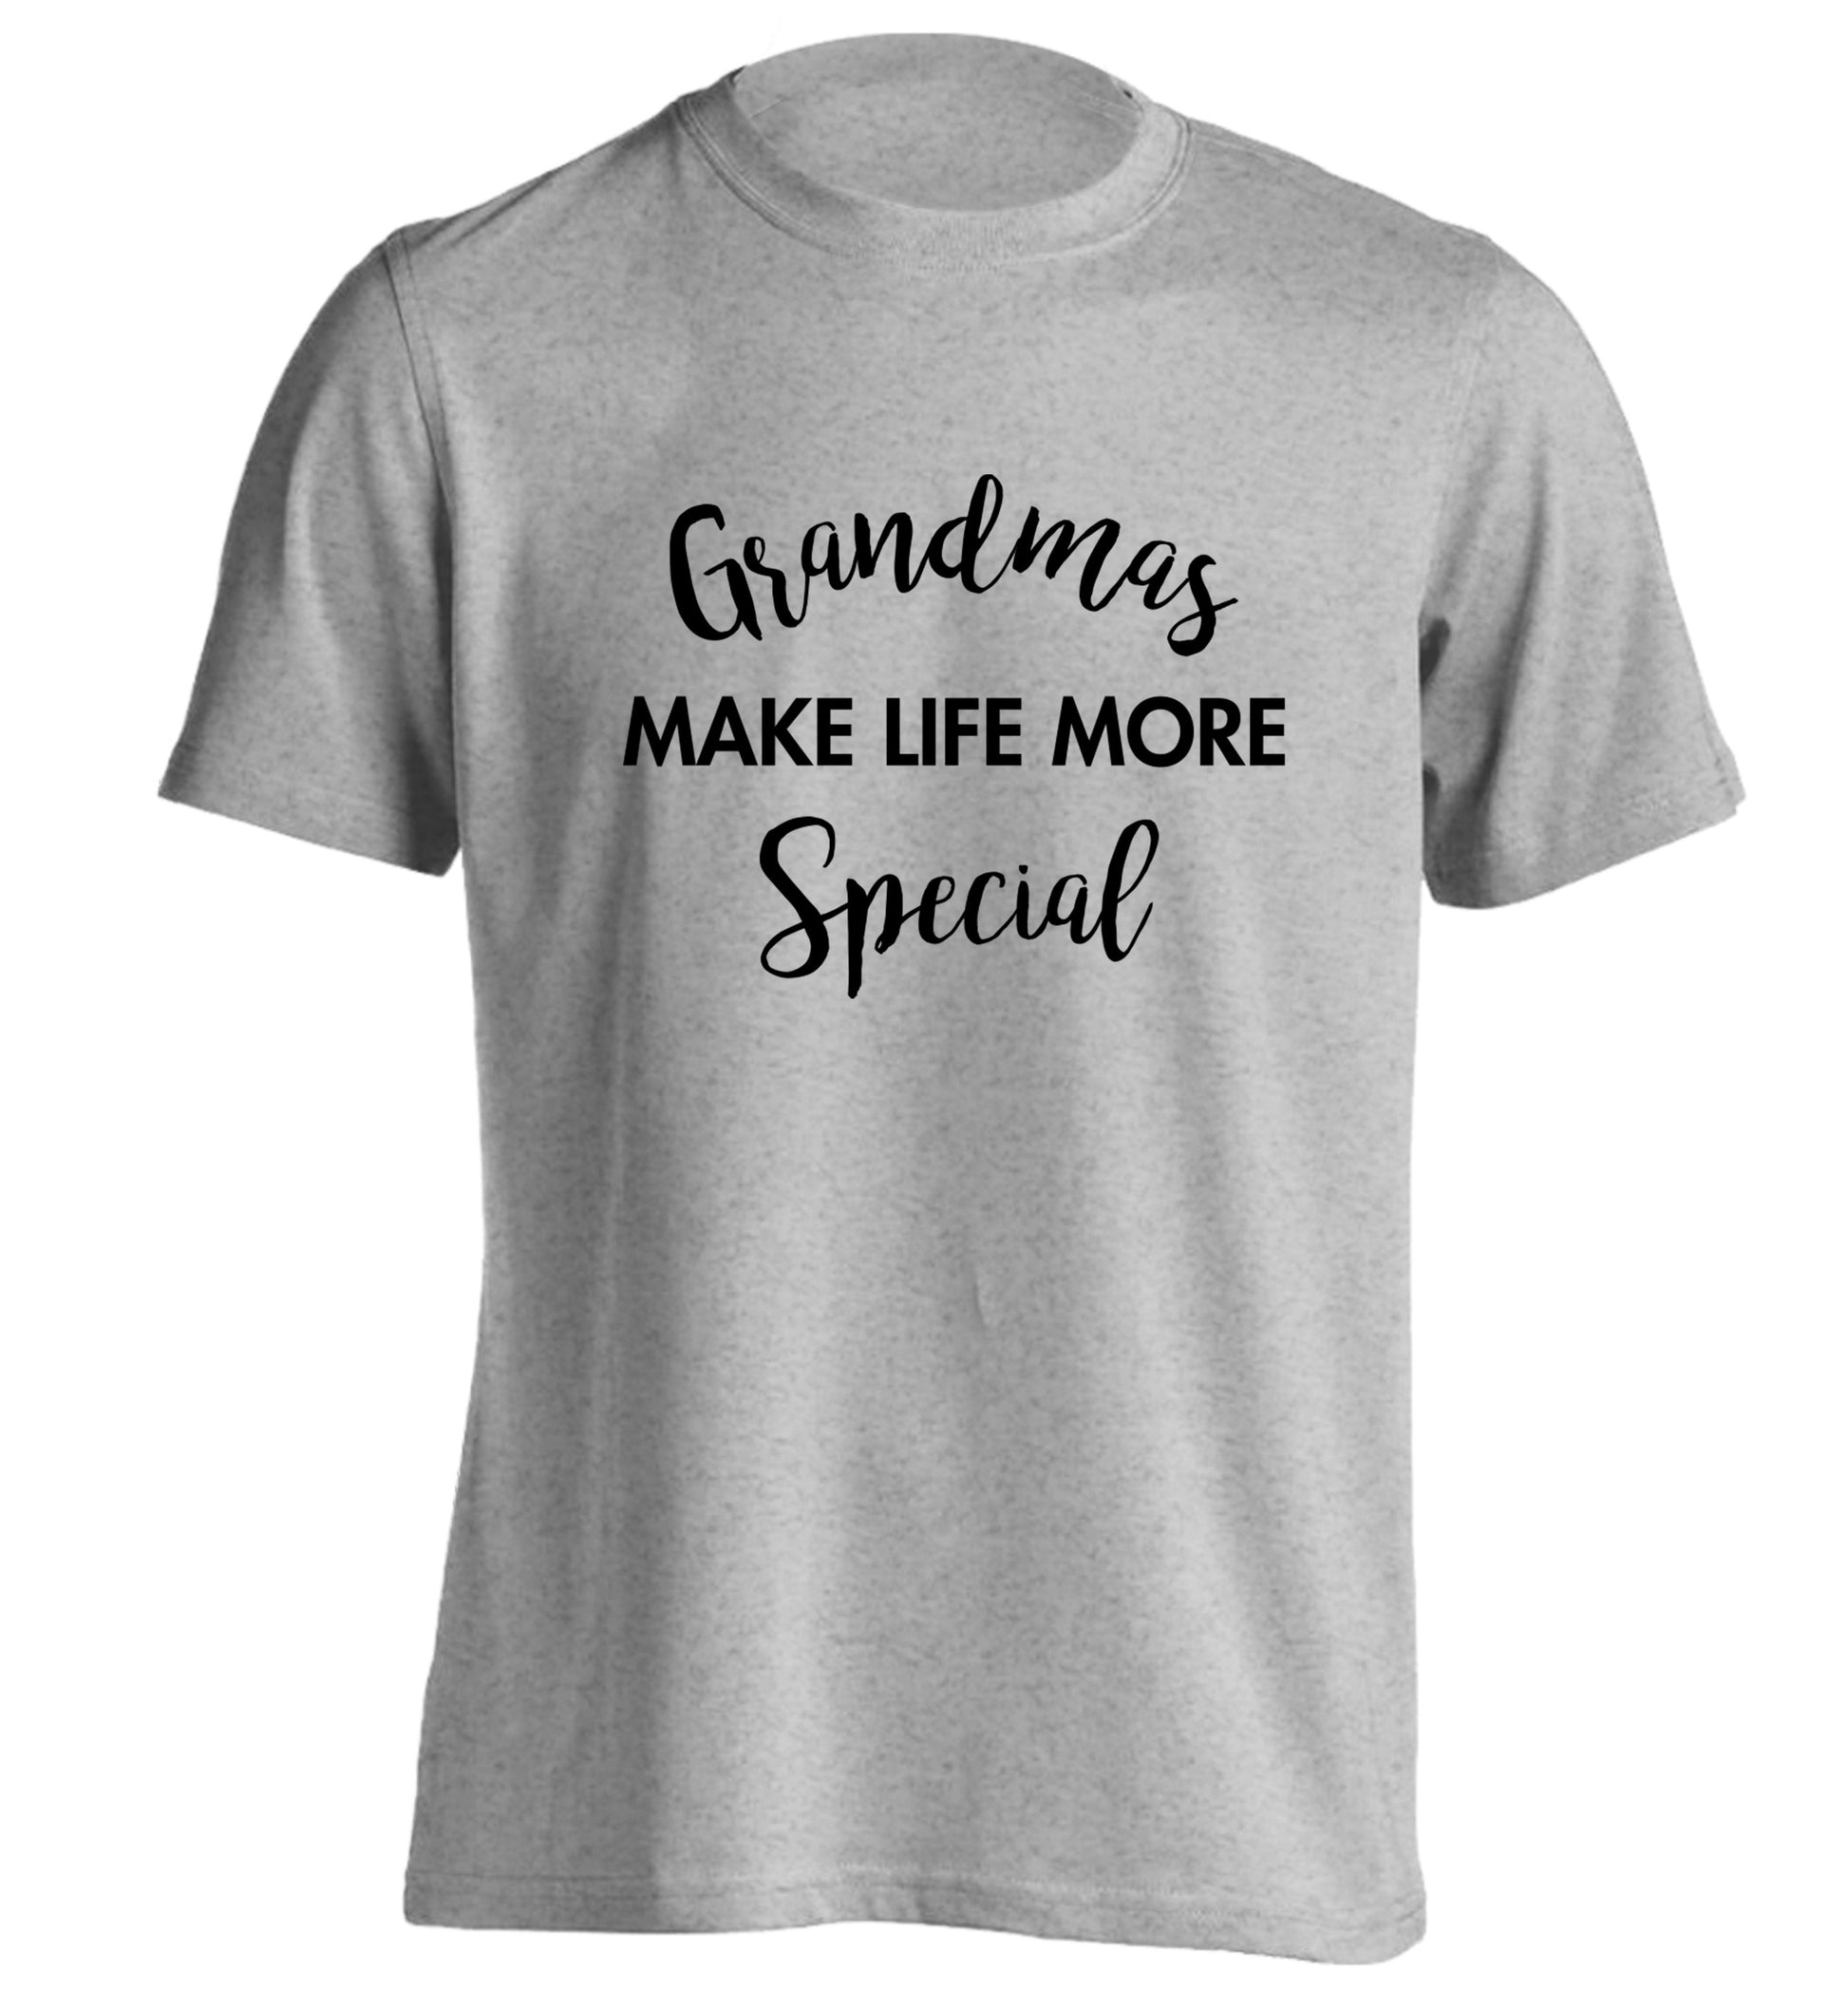 Grandmas make life more special adults unisex grey Tshirt 2XL